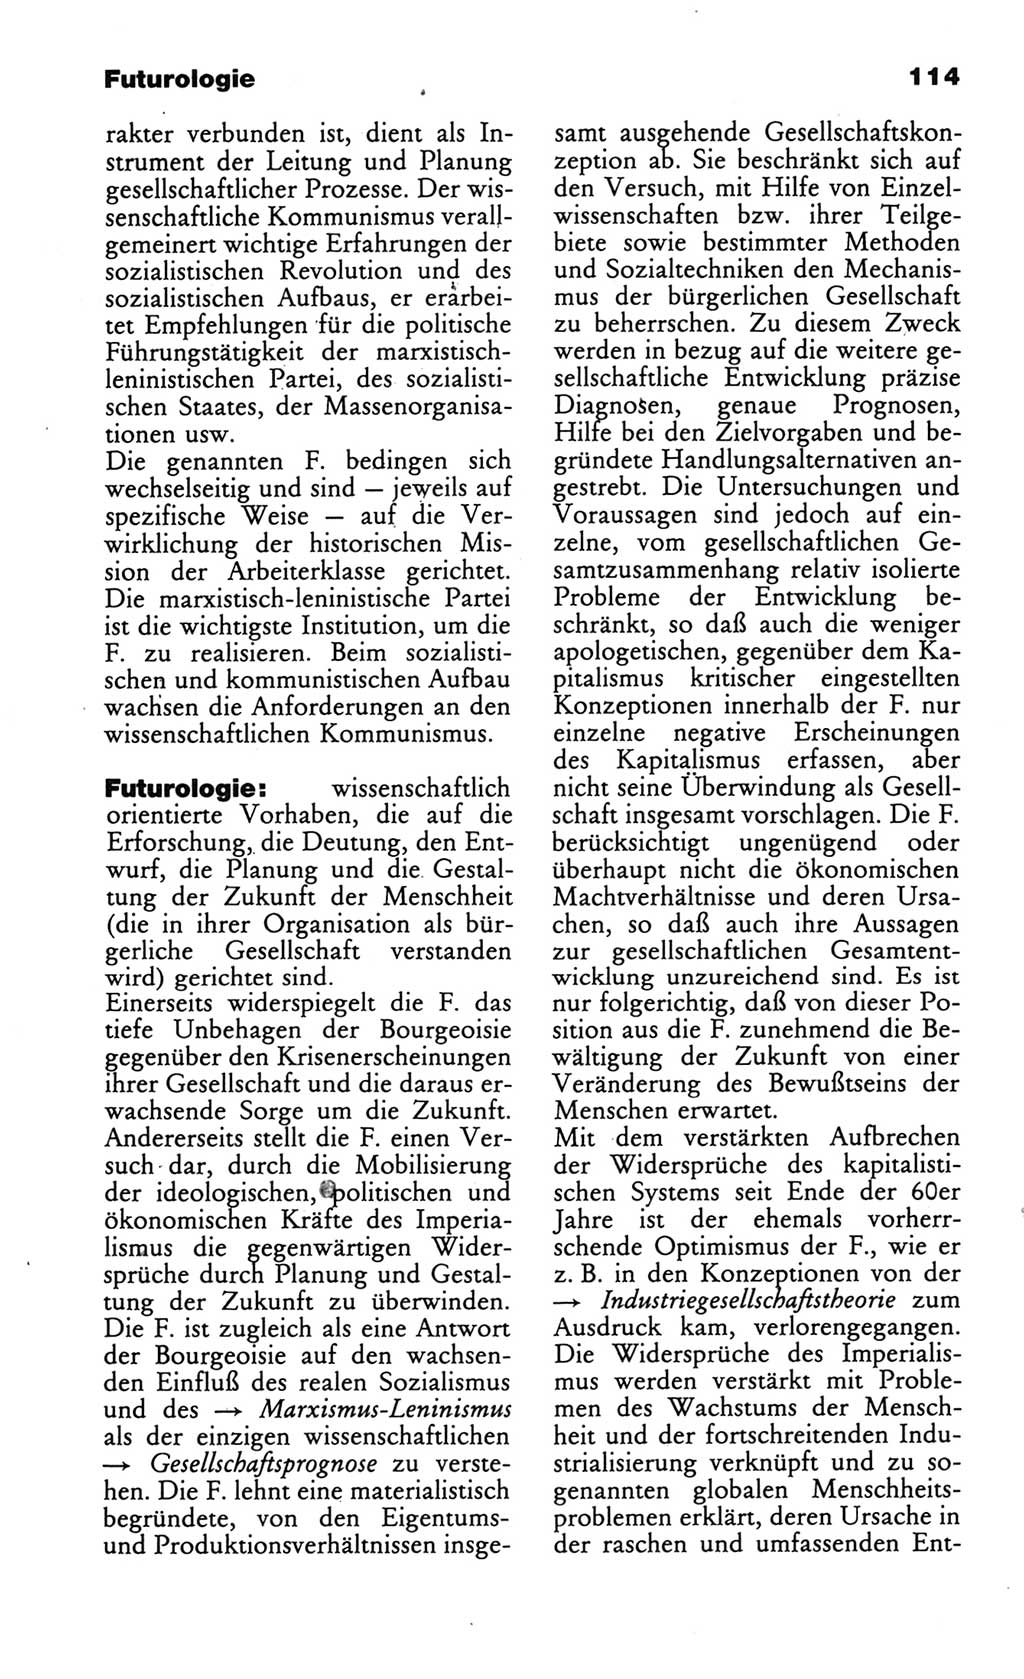 Wörterbuch des wissenschaftlichen Kommunismus [Deutsche Demokratische Republik (DDR)] 1986, Seite 114 (Wb. wiss. Komm. DDR 1986, S. 114)